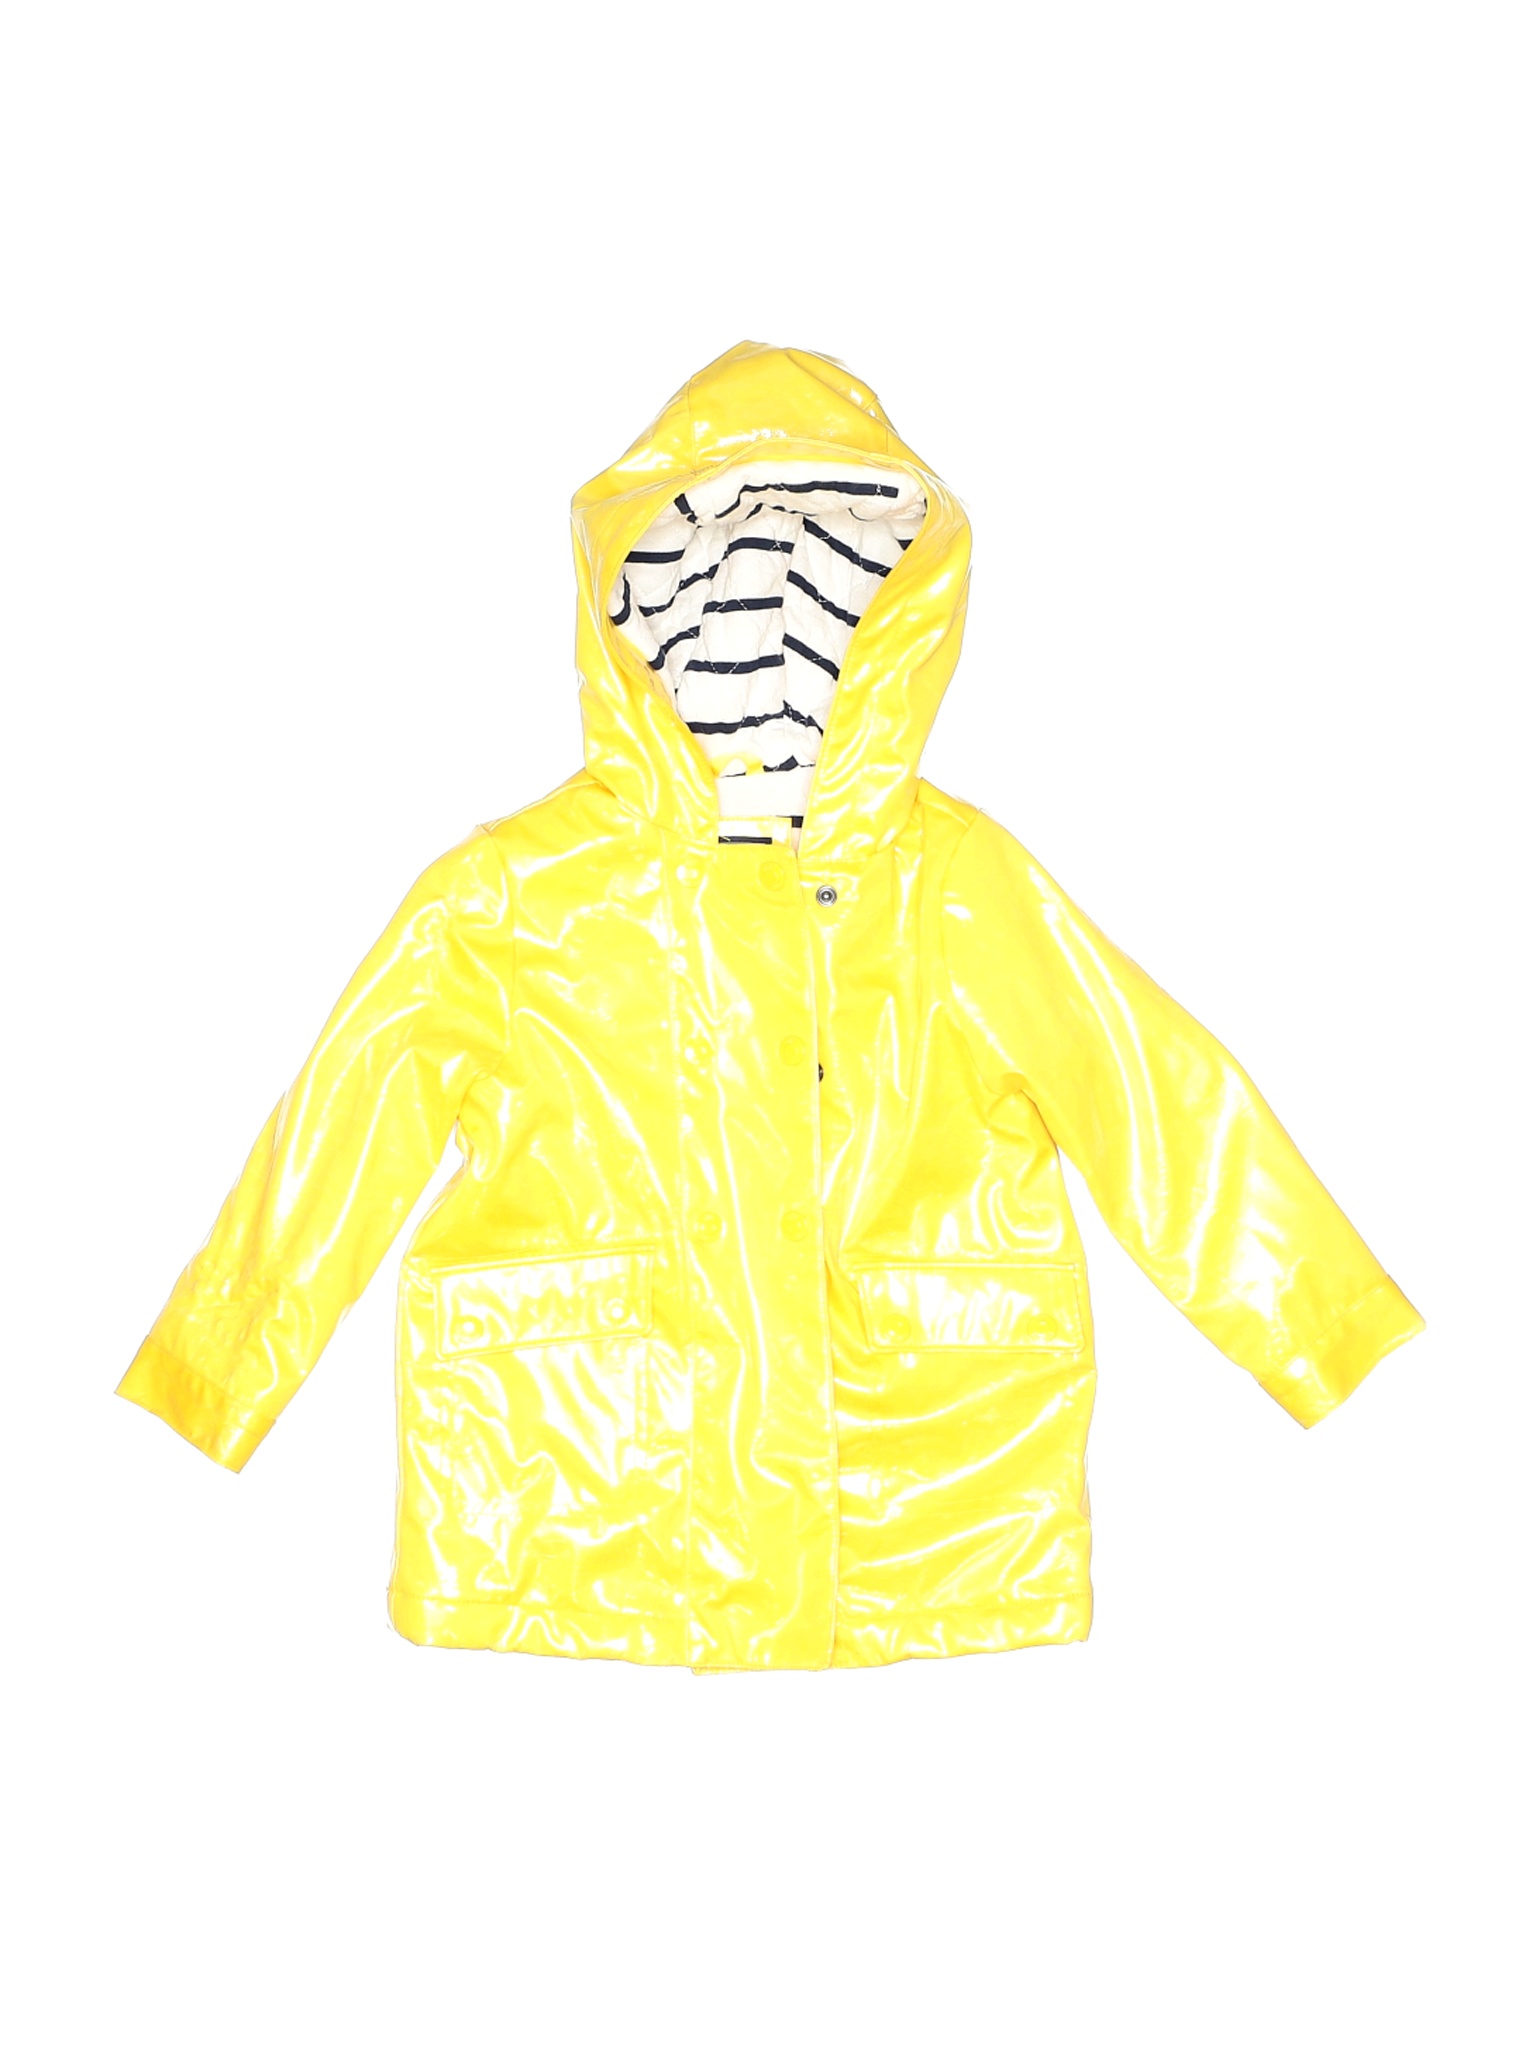 Baby Gap Girls Yellow Raincoat 4 | eBay